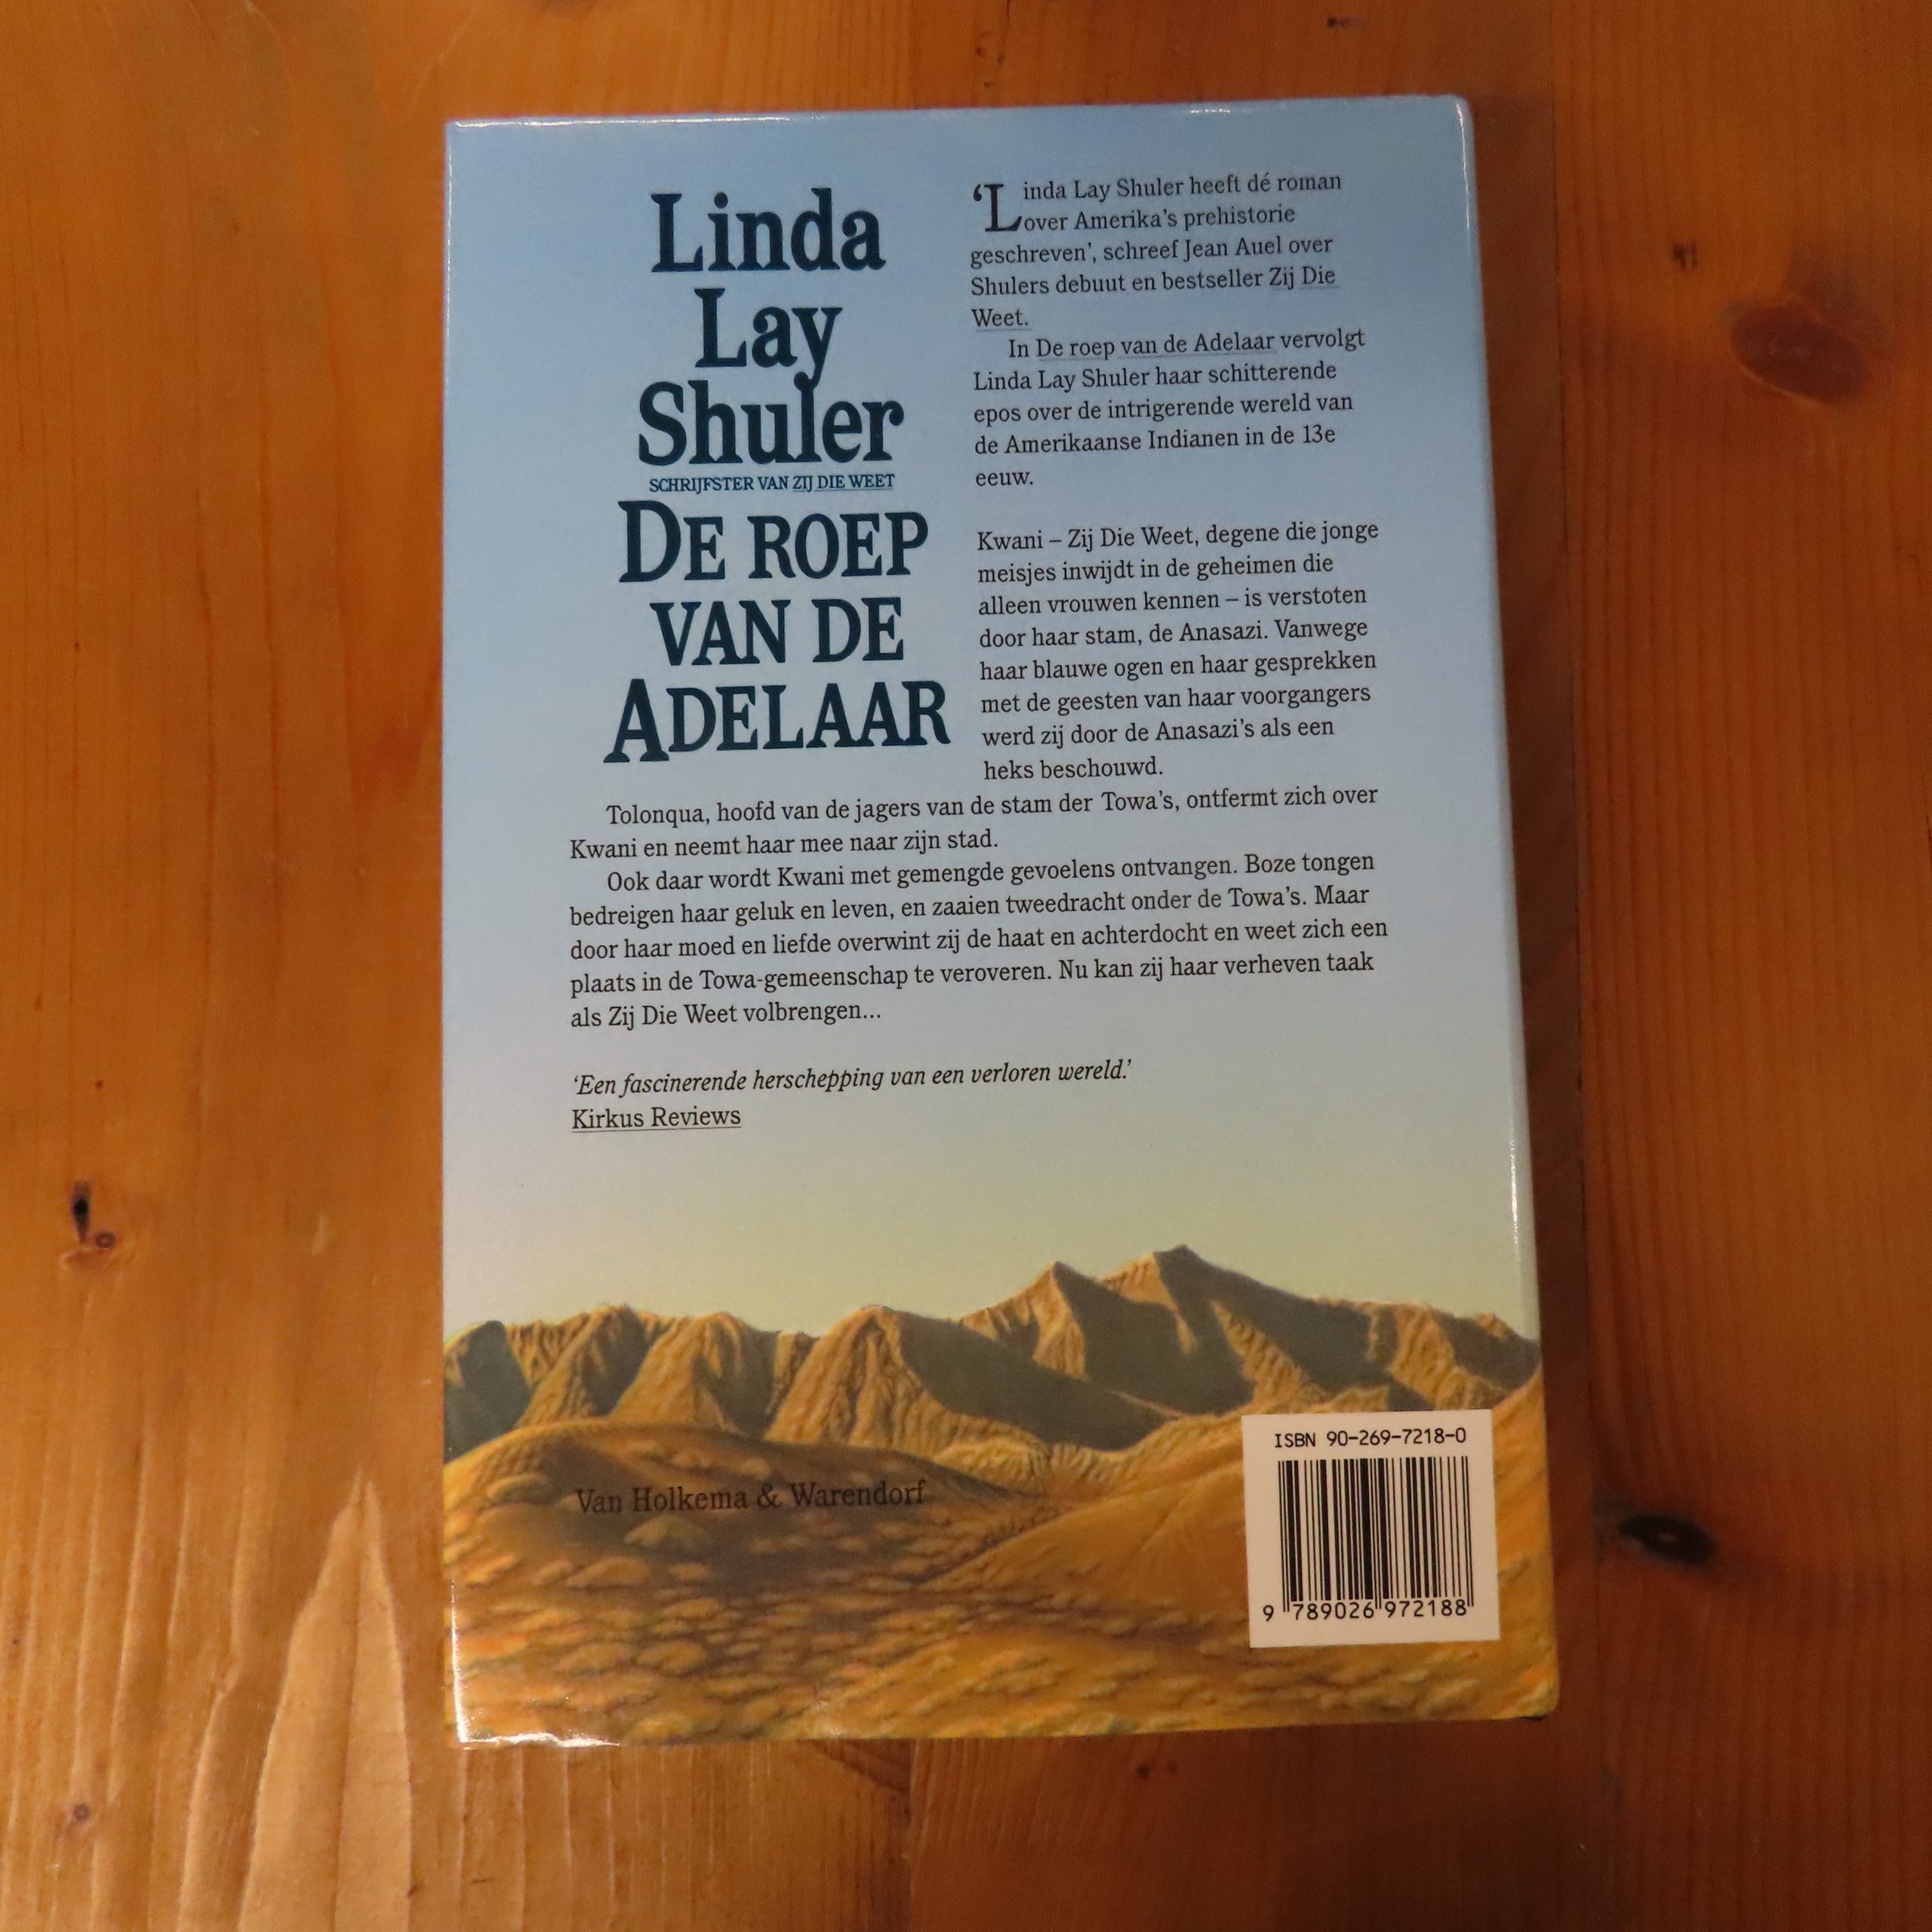 Boek “De roep van de adelaar” van Linda Lay Shuler